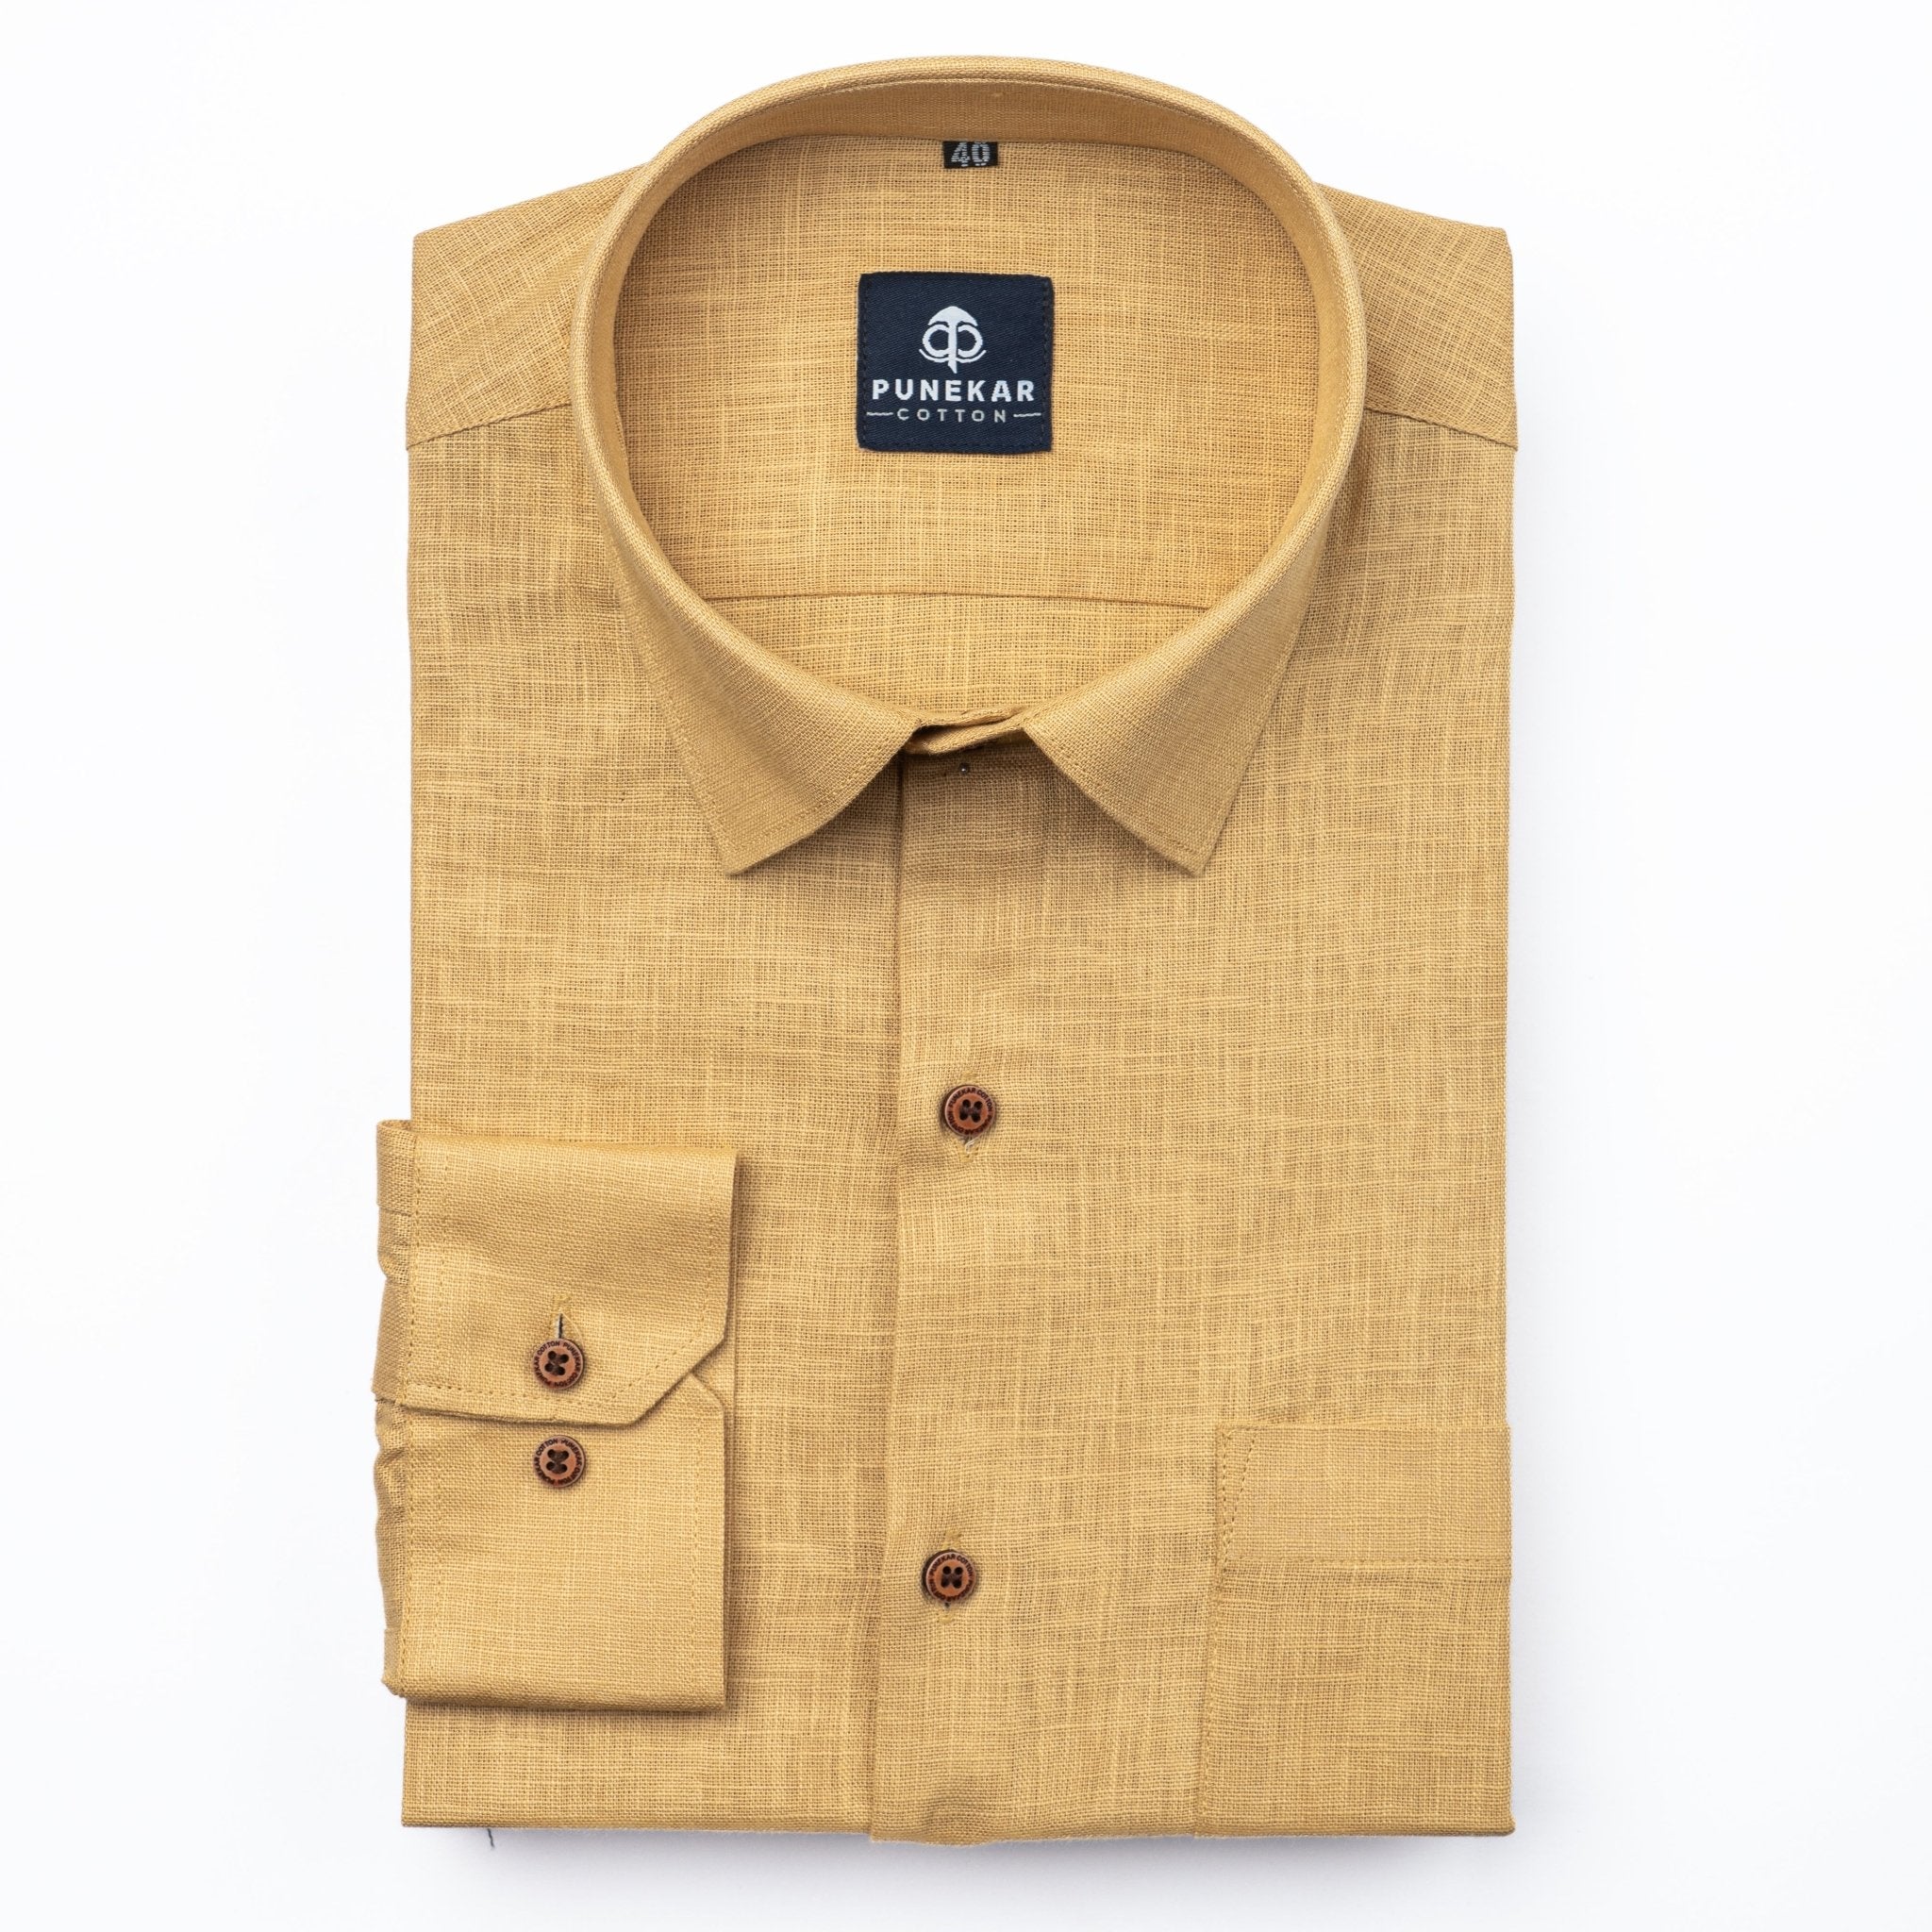 Font Color Linen Formal Shirts For Men – Punekar Cotton